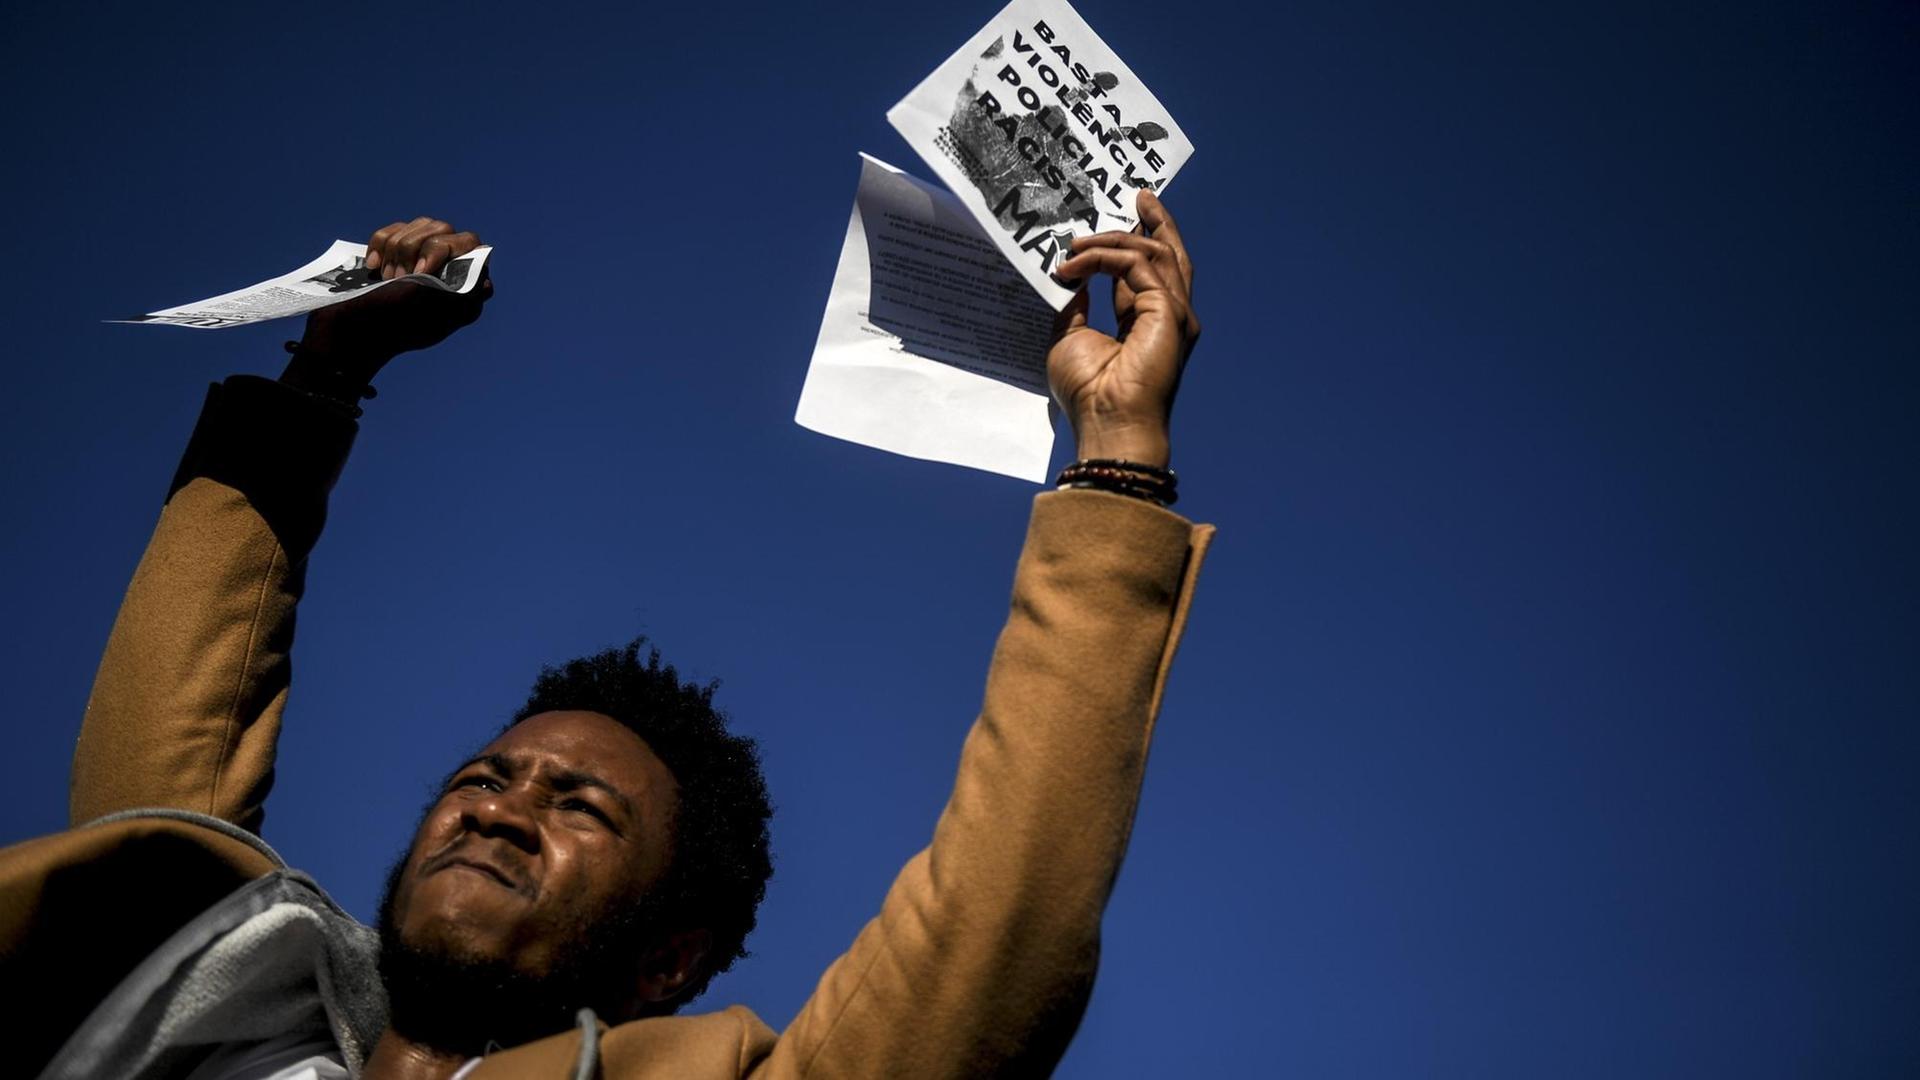 Ein Mann hält ein Papier hoch mit der Aufschrift "Genug von rassistischer Polizeigewalt" während einer Demonstration gegen Rassismus und Missbrauch von polizeilicher Gewalt in Seixal, einem Vorort von Lissabon, am 25. Januar 2019